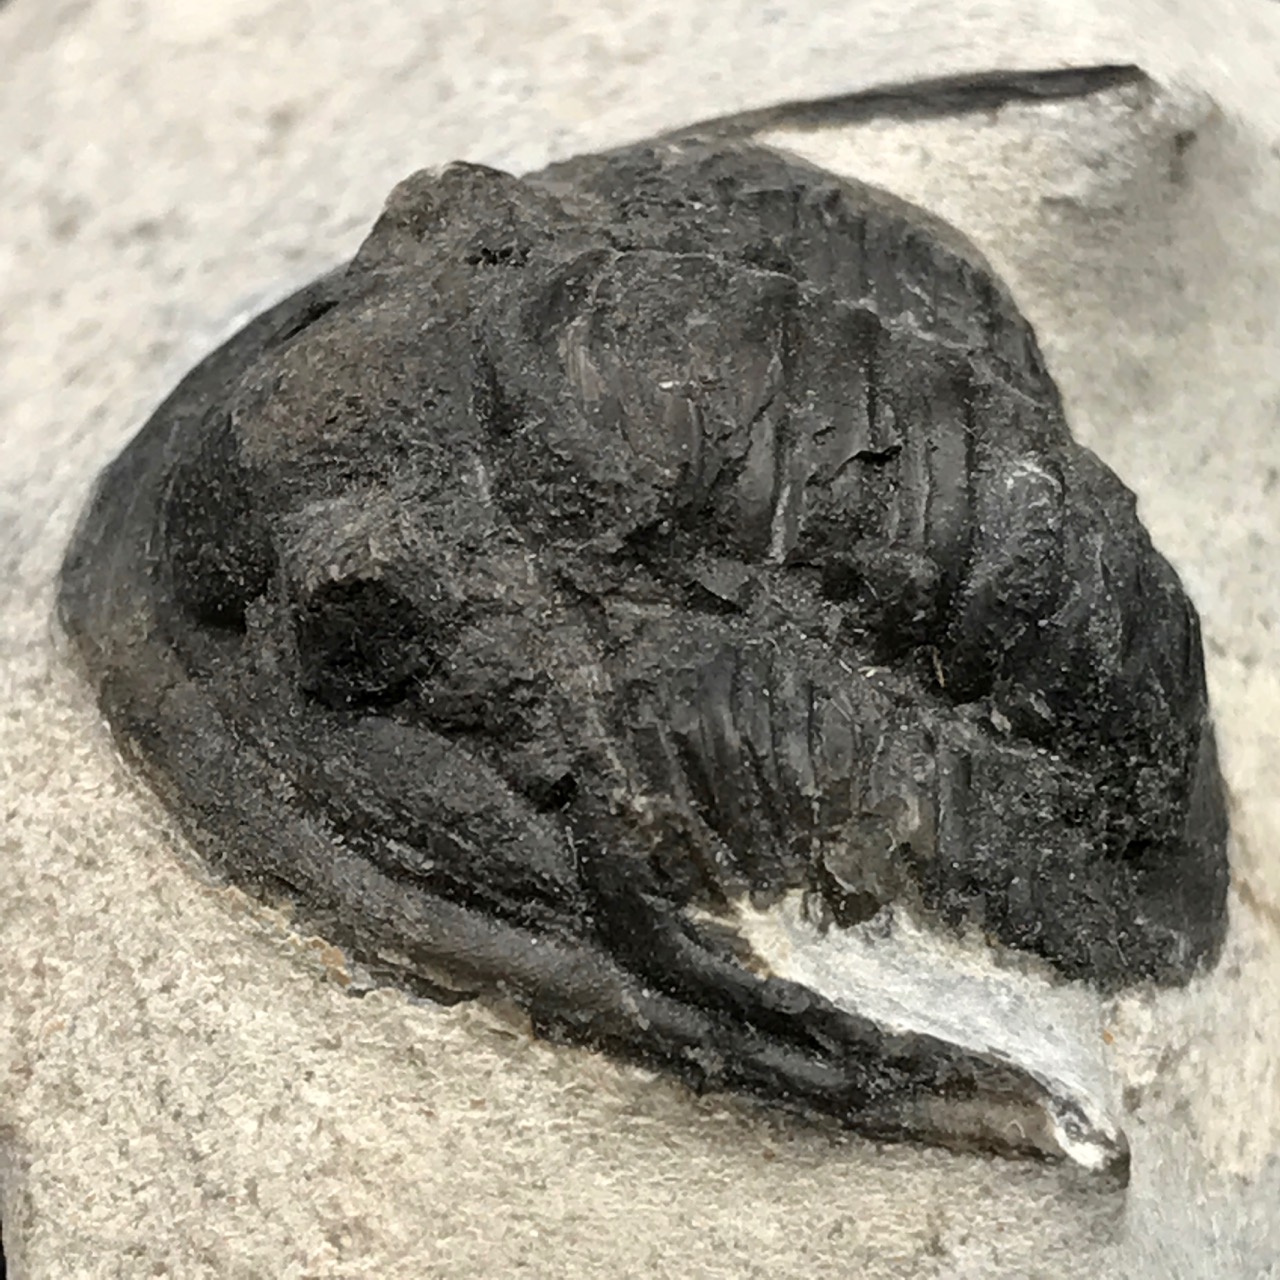 Trilobite Cornuproetus sur gangue du Moroc (réf tr19)